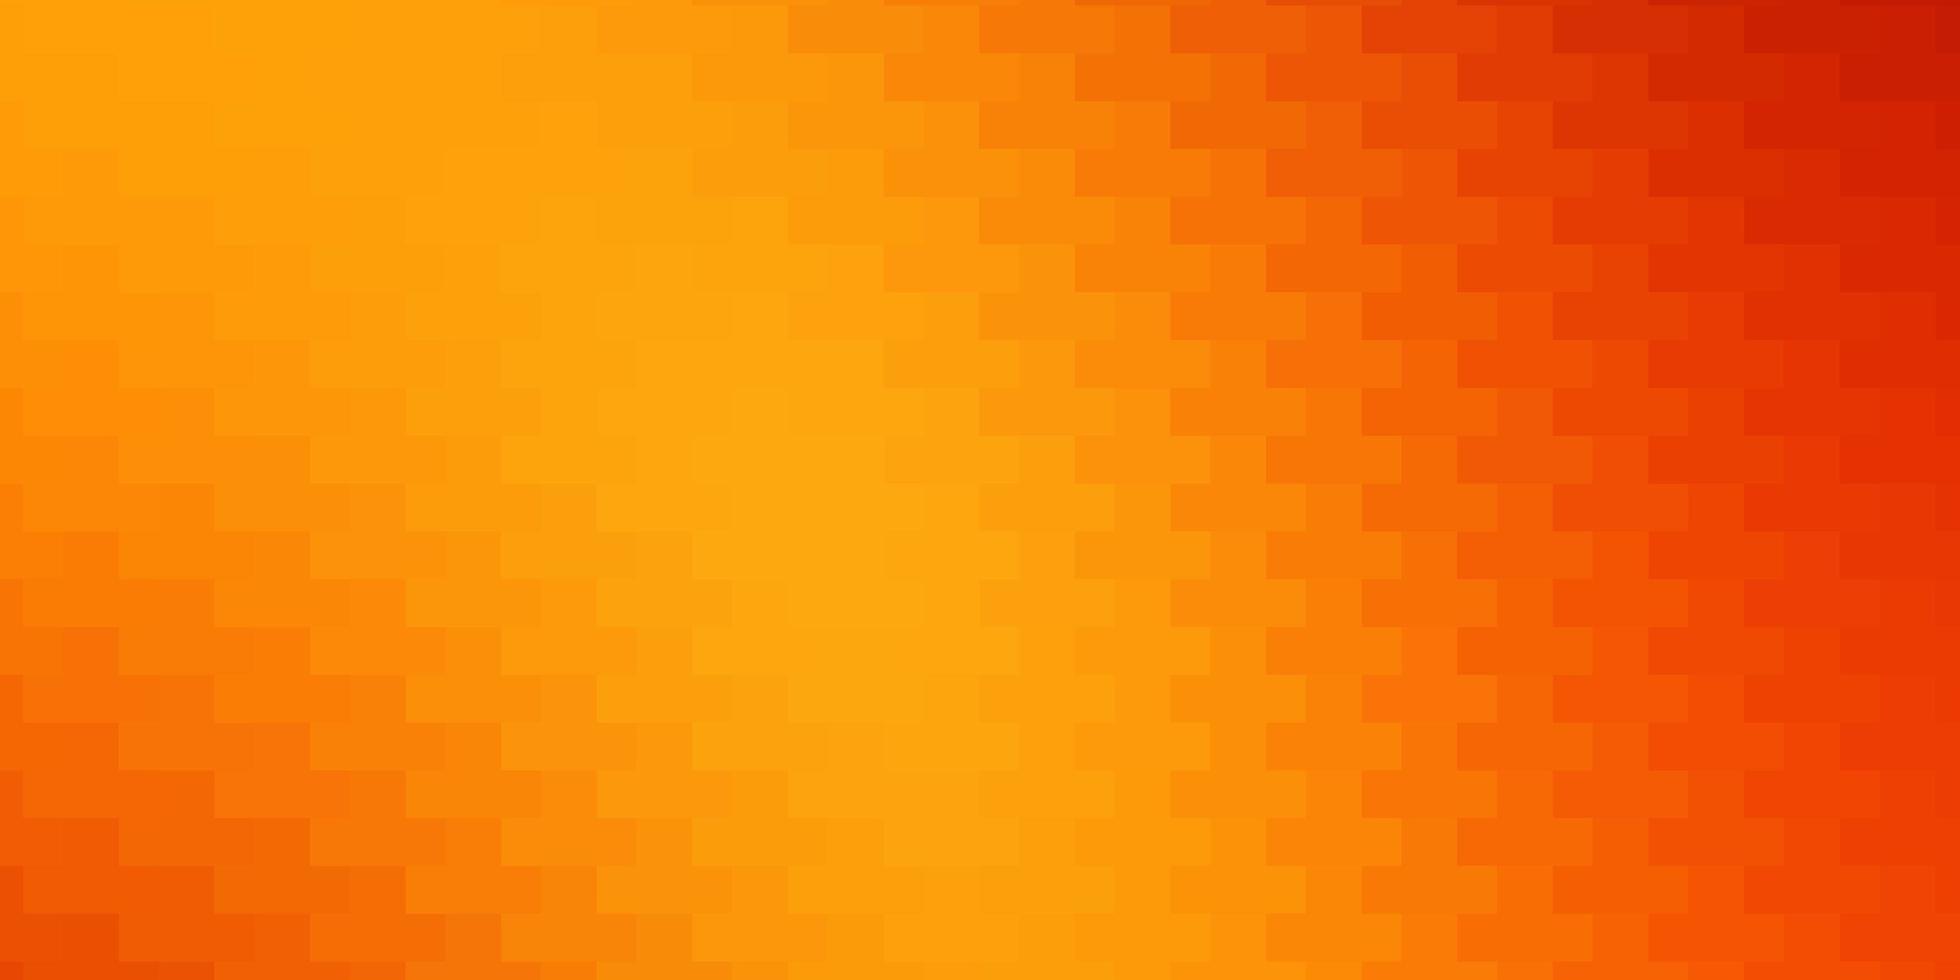 sfondo vettoriale arancione chiaro in stile poligonale. design moderno con rettangoli in stile astratto. modello per opuscoli aziendali, volantini